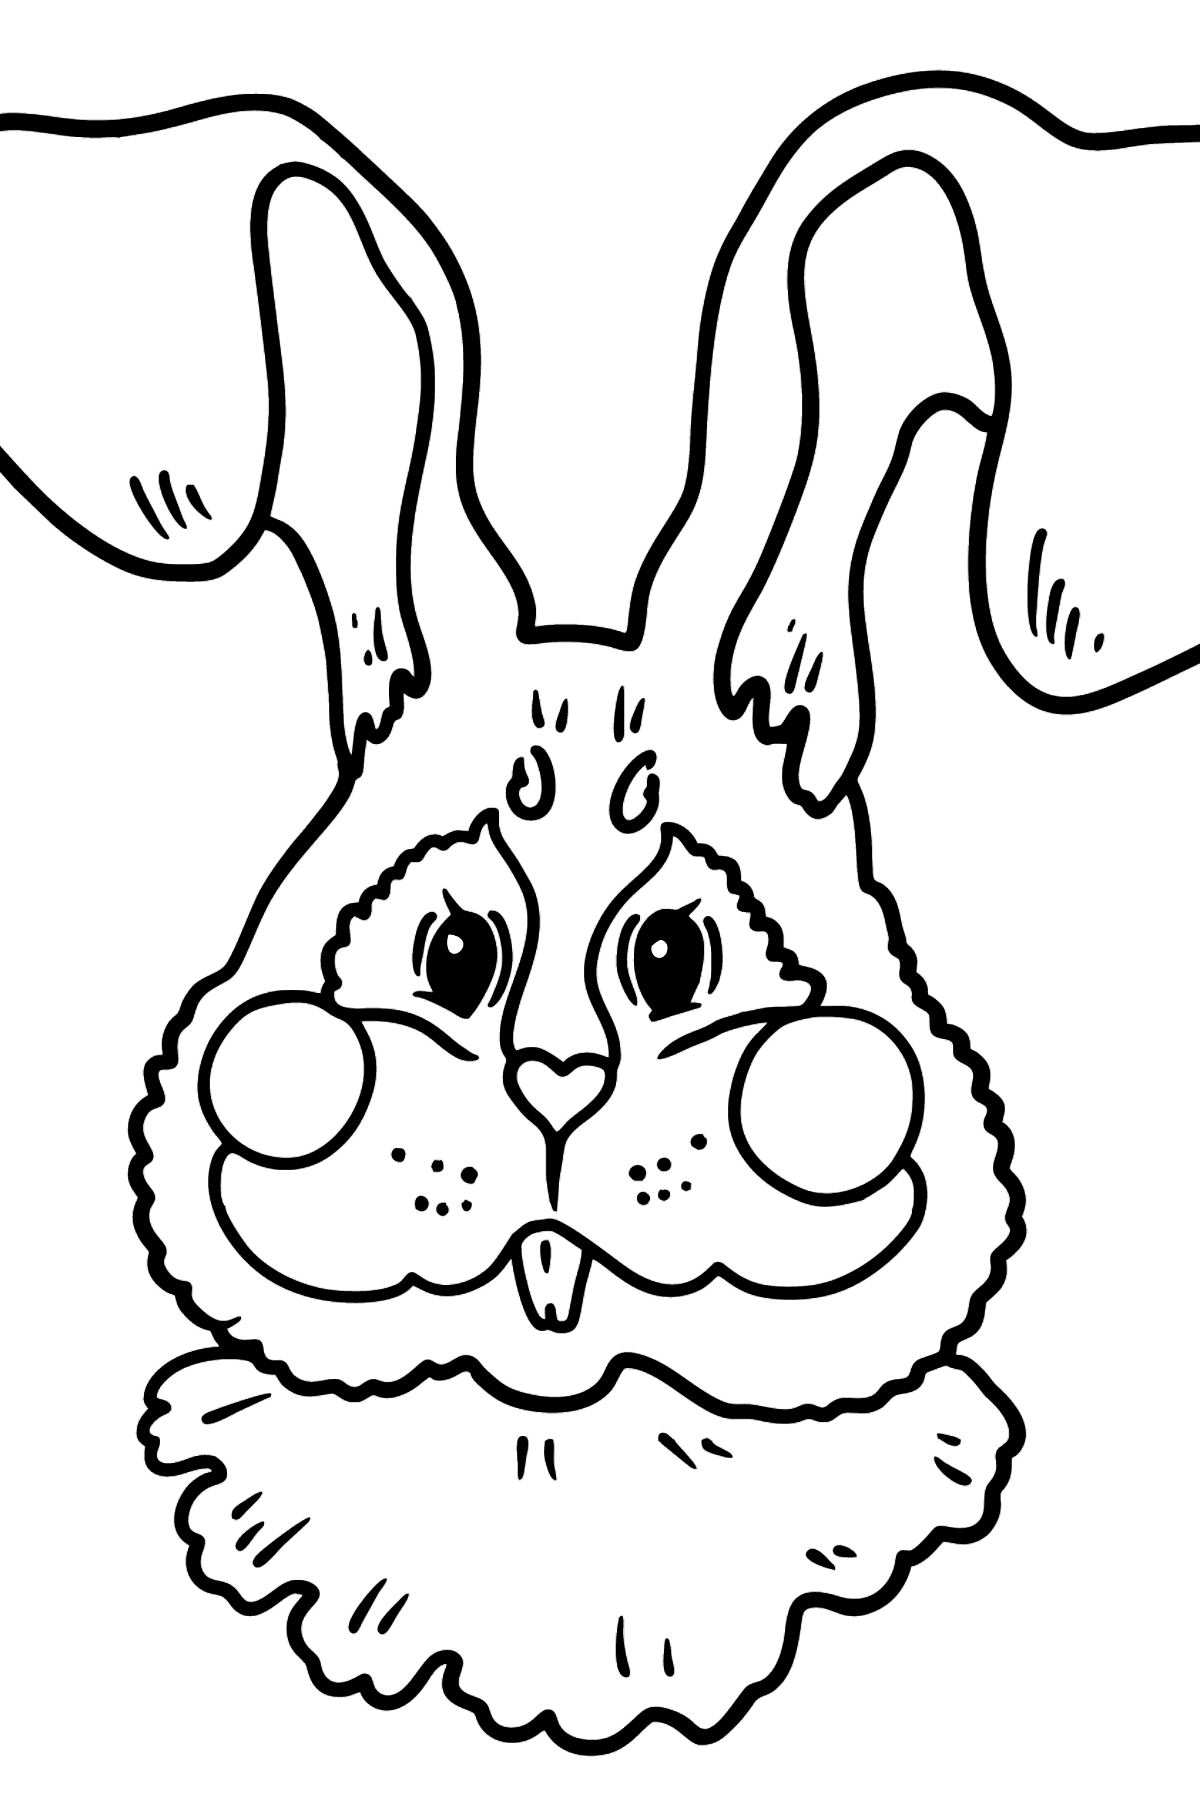 Tegning til fargelegging kanin snute - Tegninger til fargelegging for barn